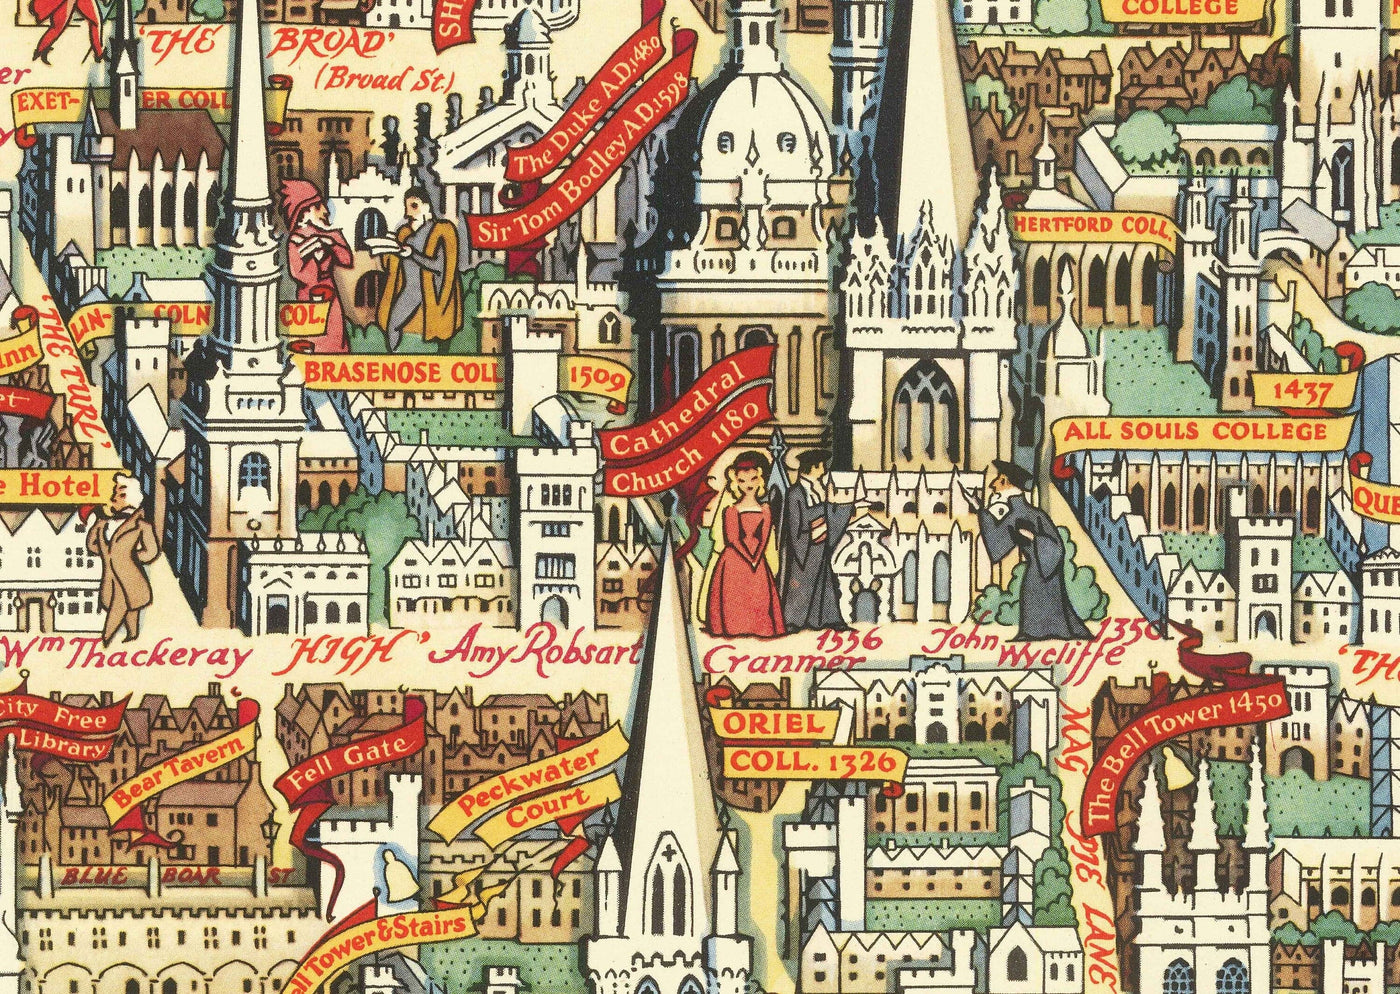 Ancienne carte illustrée d'Oxford par Kerry Lee, 1948 - Collèges universitaires illustrés, points de repère - St Catherine's, Keble, All Souls.